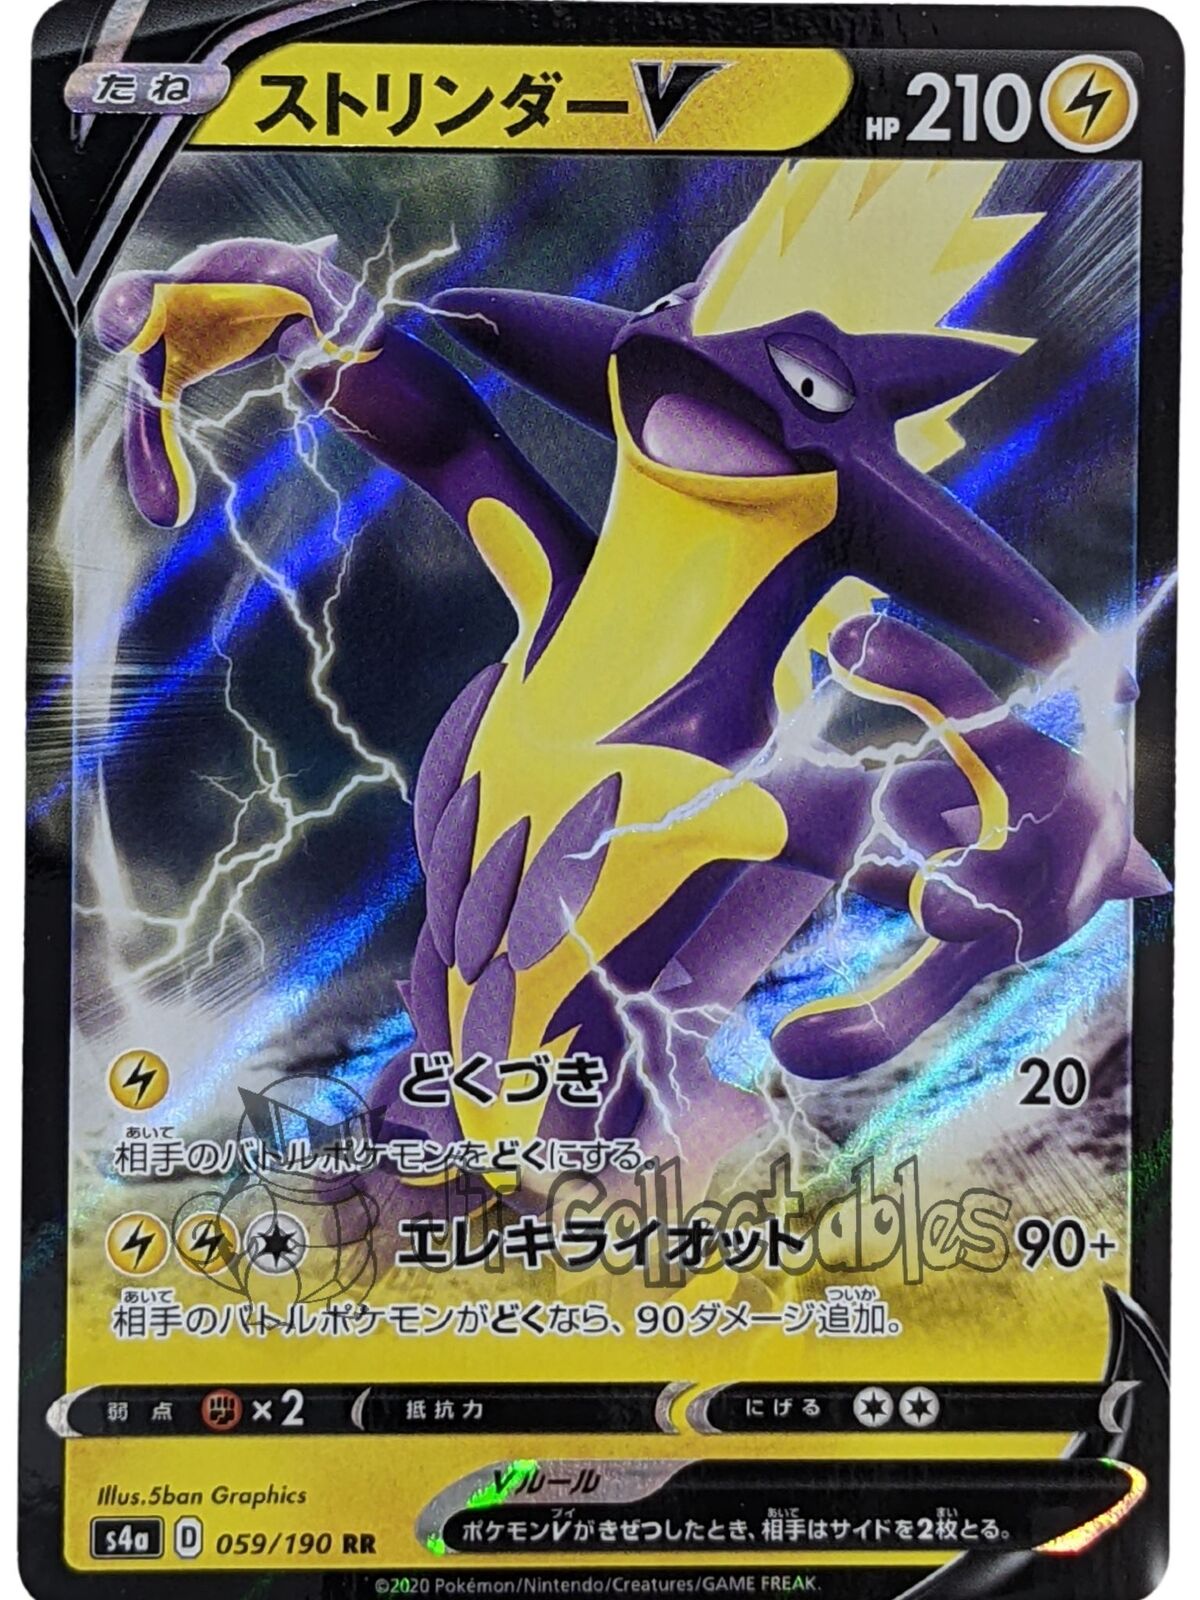 Toxtricity V 059/190 S4a - Japanese - Pokemon Card - Shiny Star